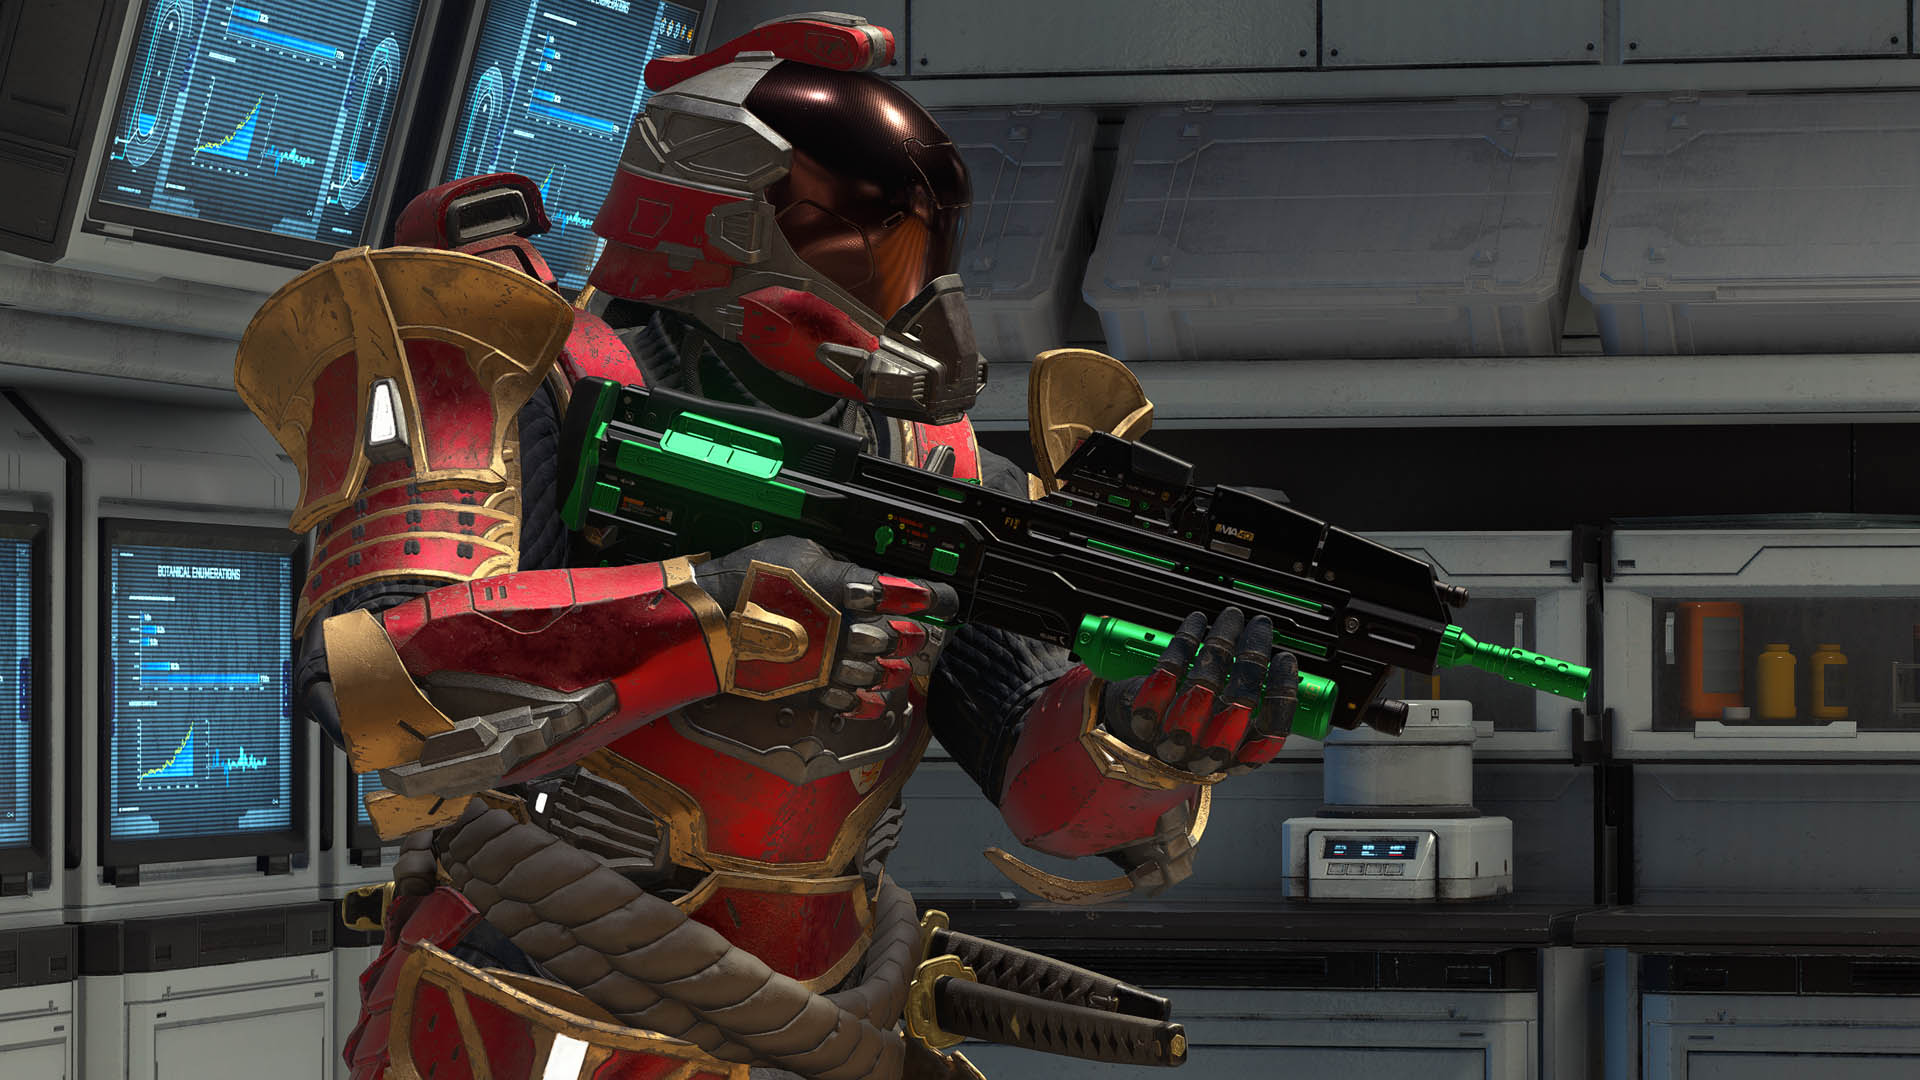 In-game screenshot of a Spartan wielding an assault rifle